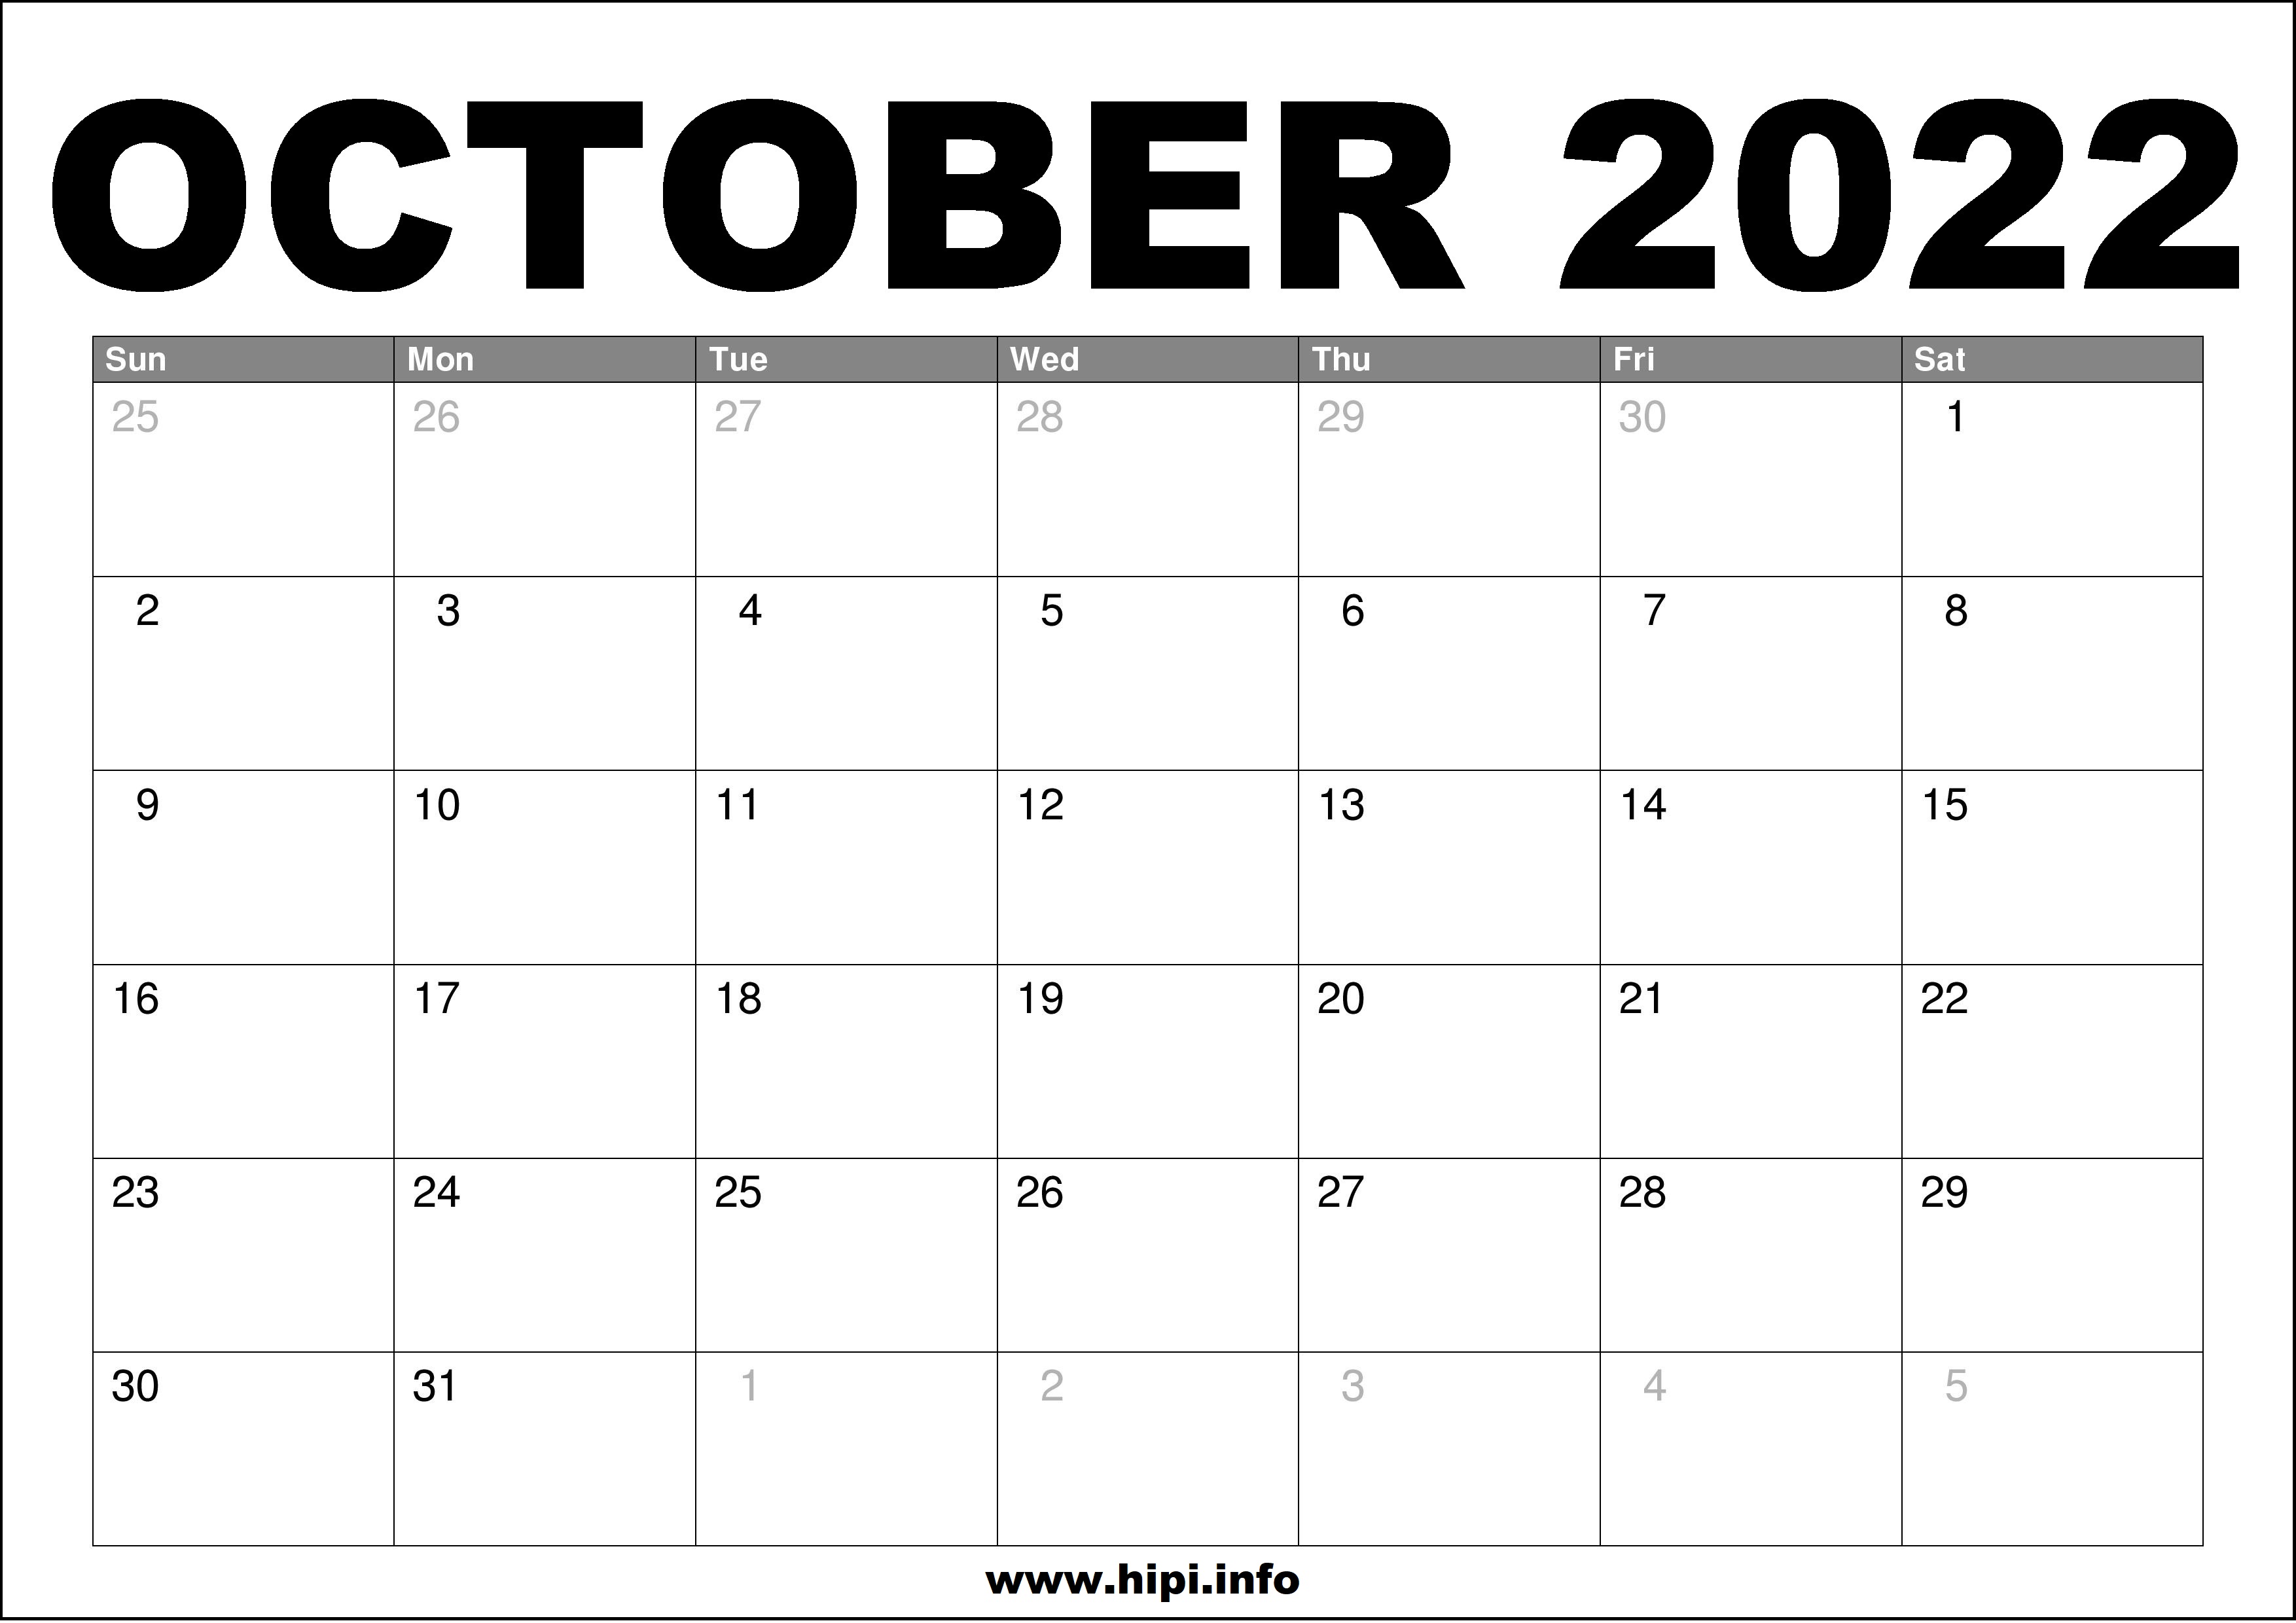 Monthly Calendar October 2022 October 2022 Calendar Printable Free - Hipi.info | Calendars Printable Free